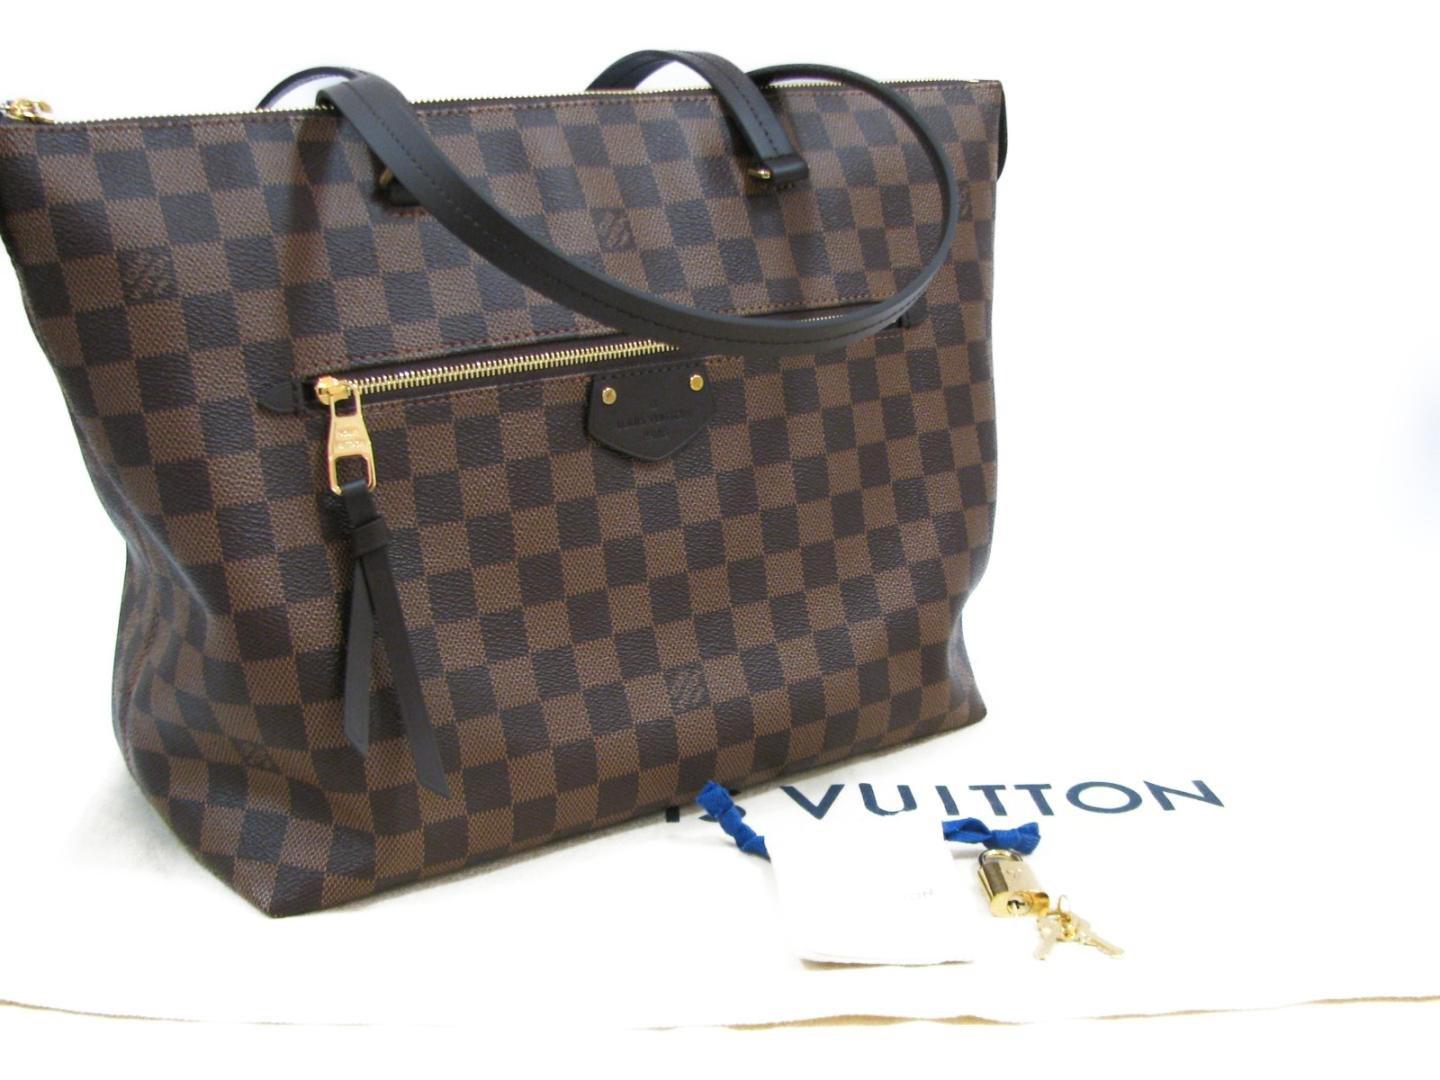 Louis Vuitton Iena Mm Shoulder Bag Damier N41013 in Brown - Lyst